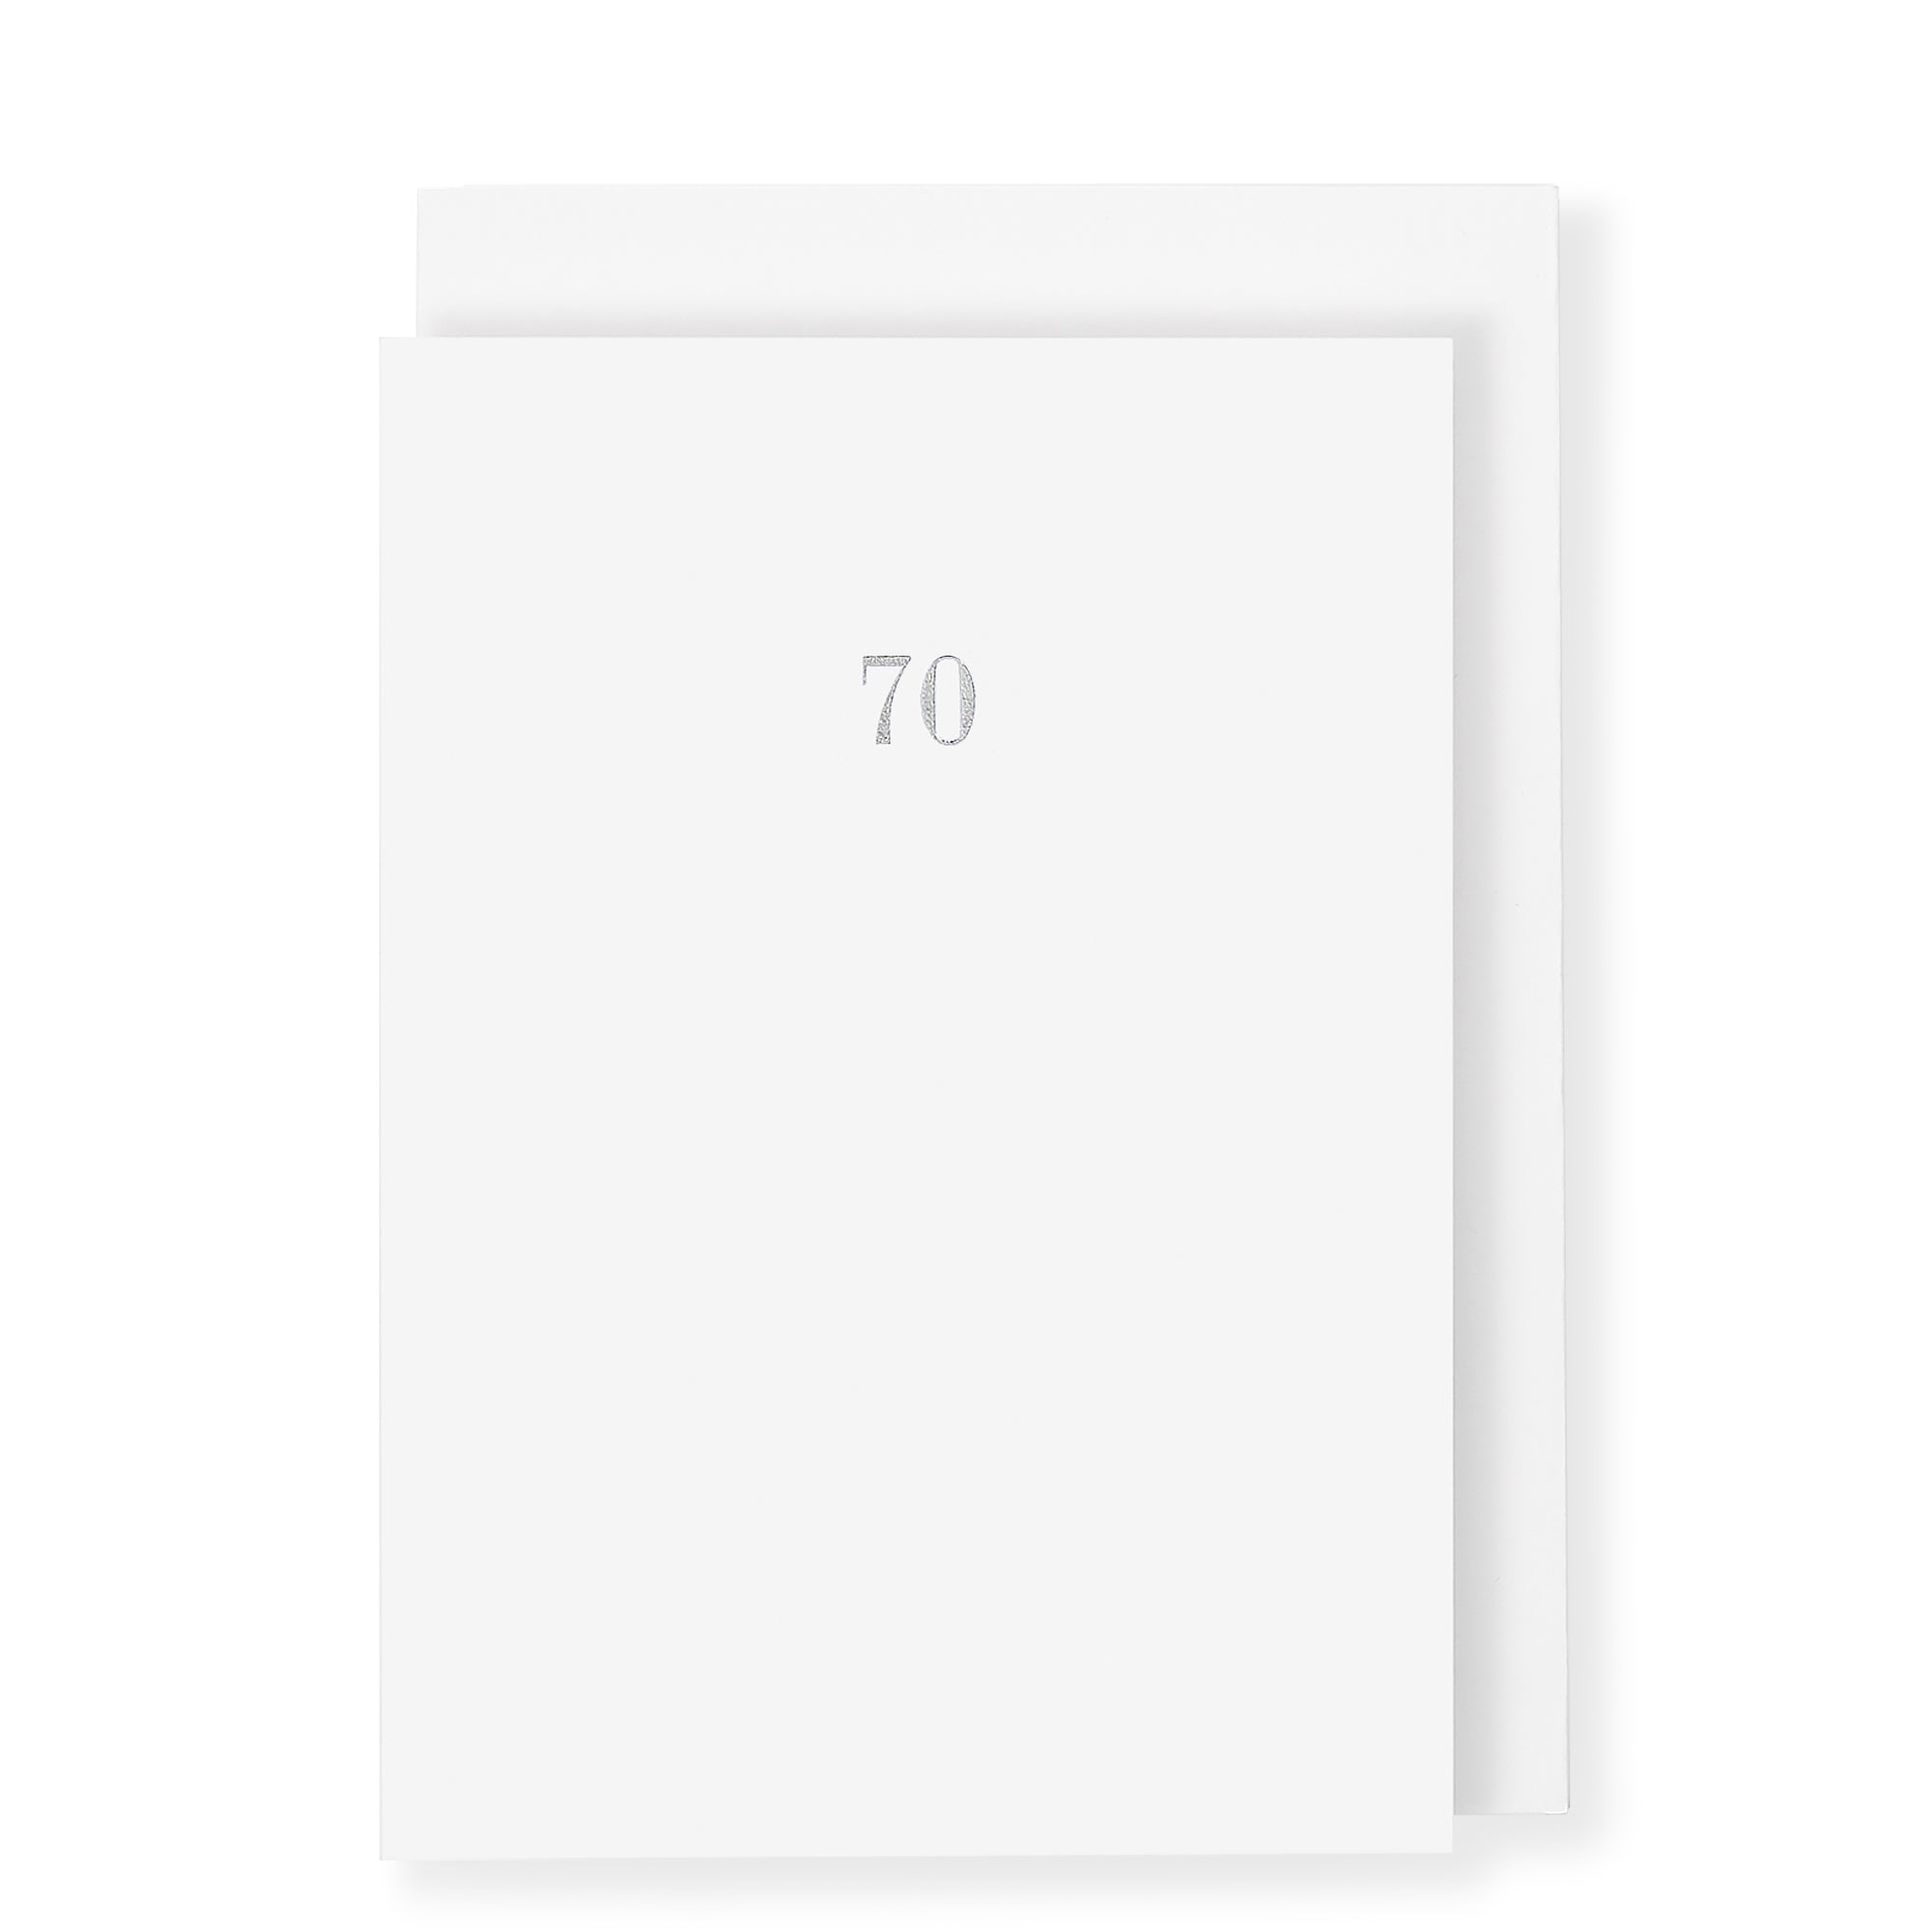 70th Birthday Milestone Anniversary Card, White